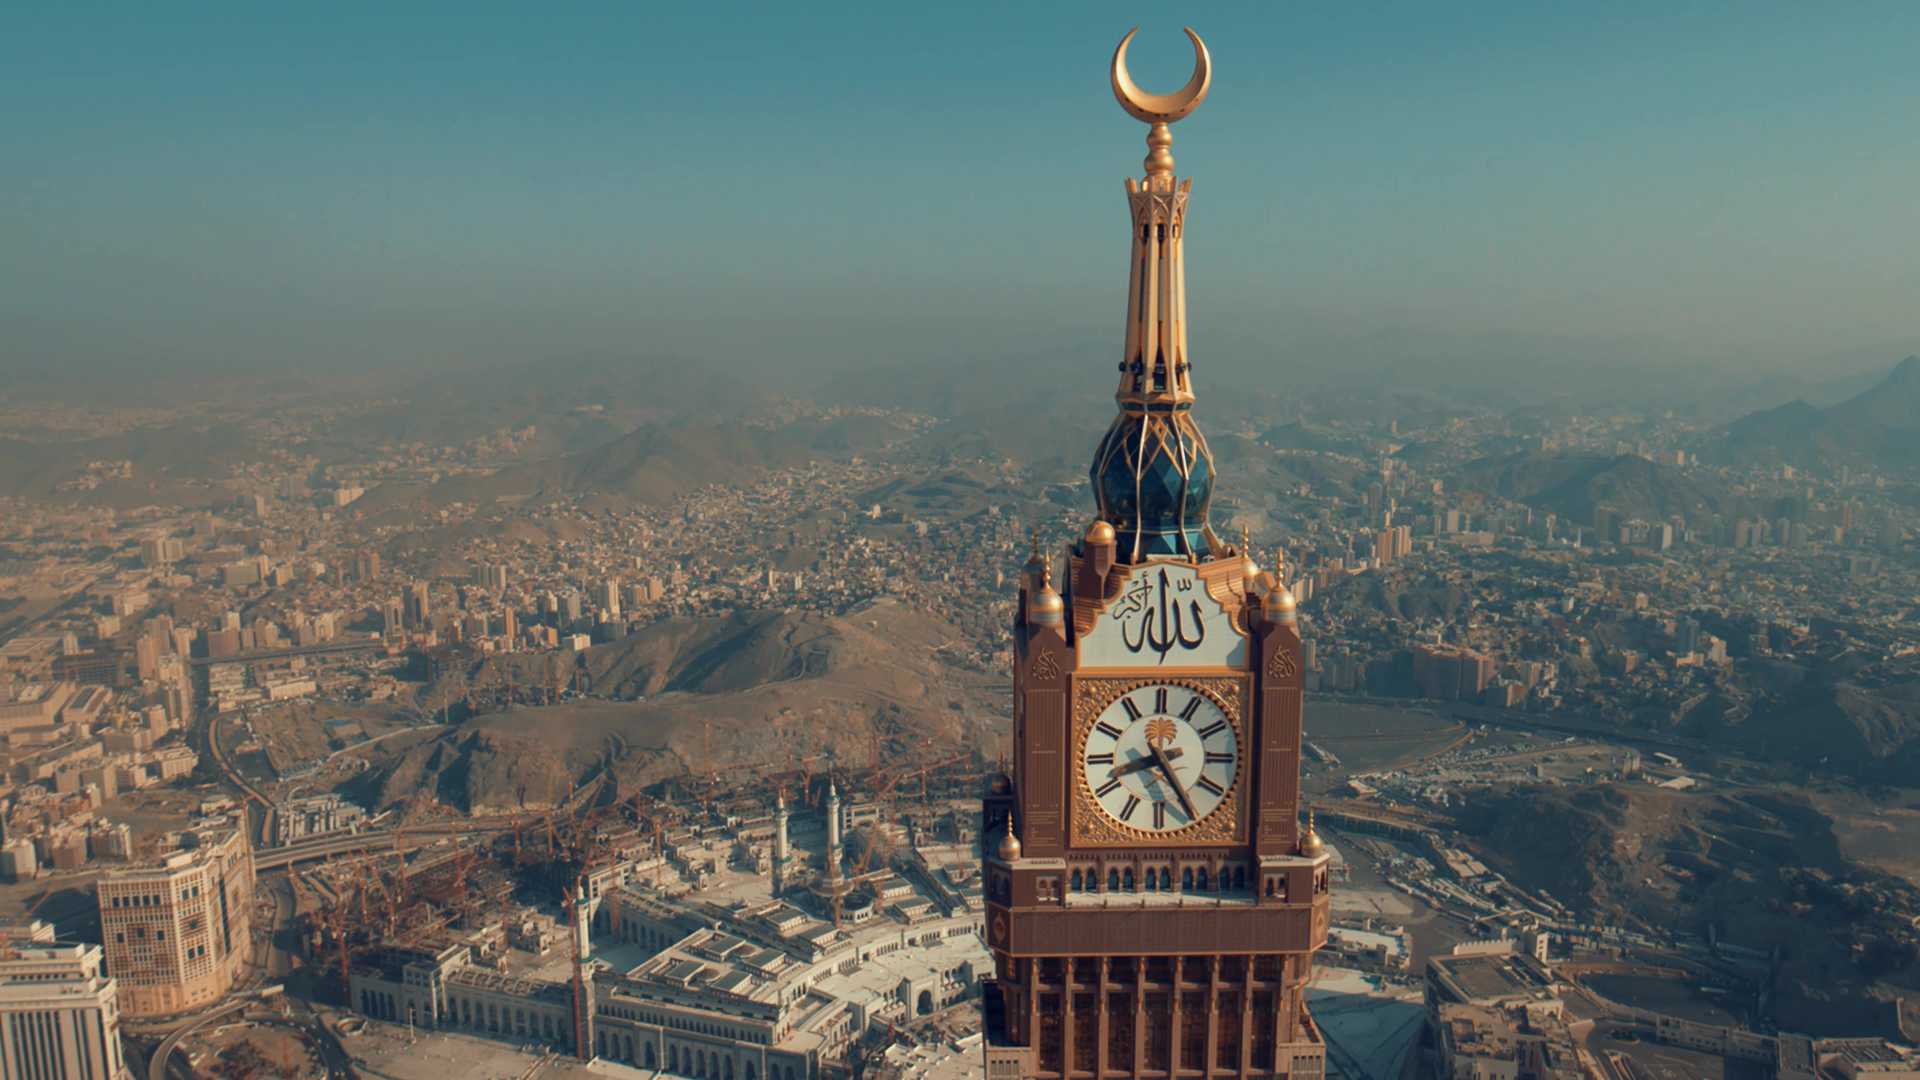 Clock Tower Museum - Makkah in Makkah - Welcome Saudi